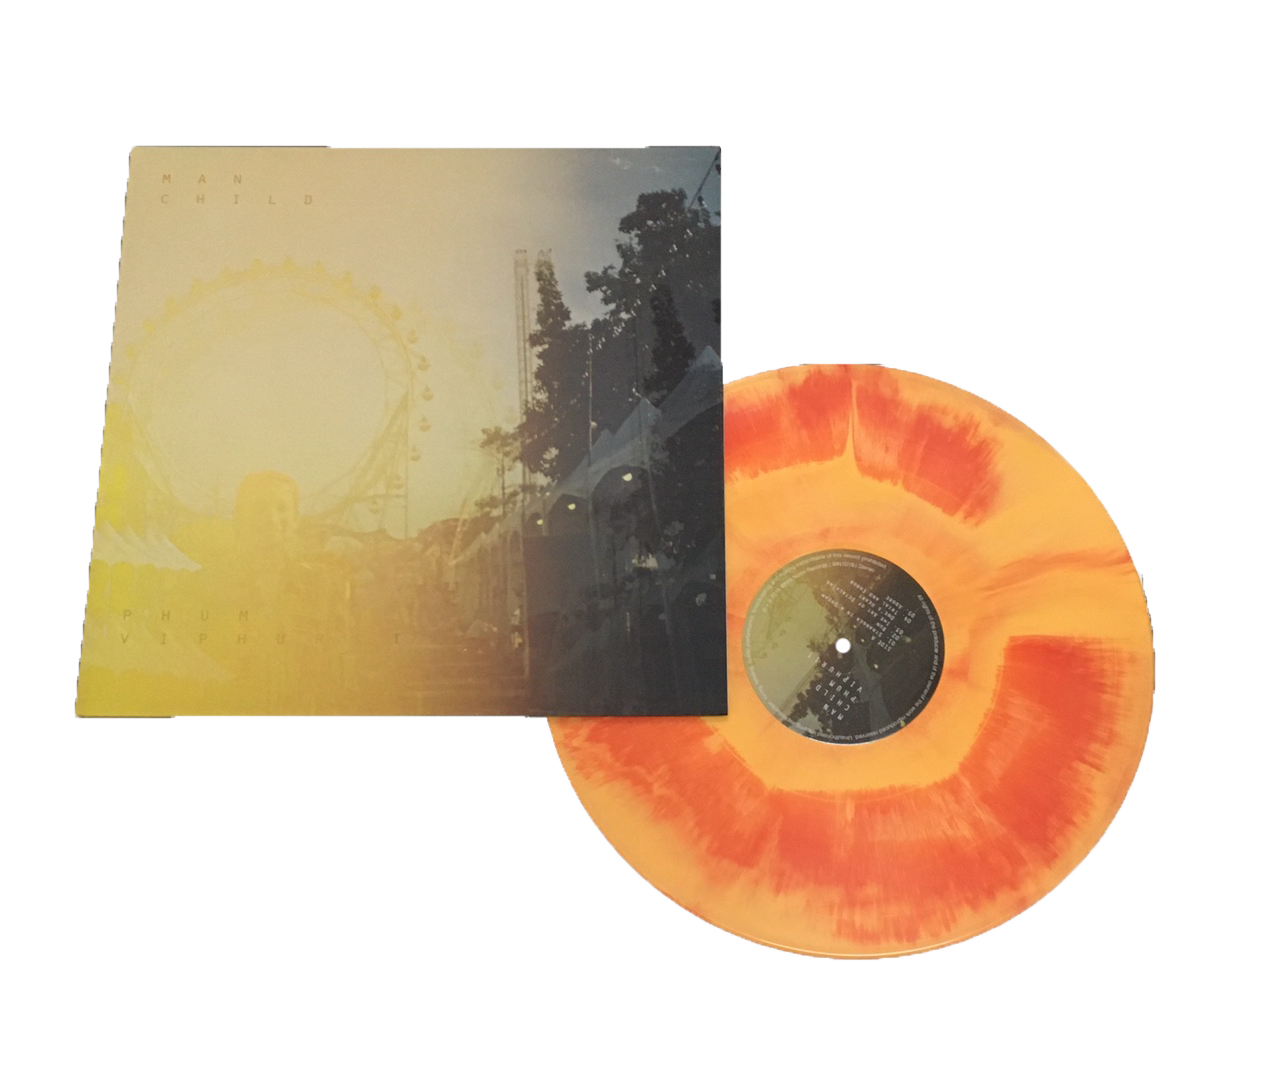 Manchild (Limited Edition 180g Red & Orange Marble Vinyl)